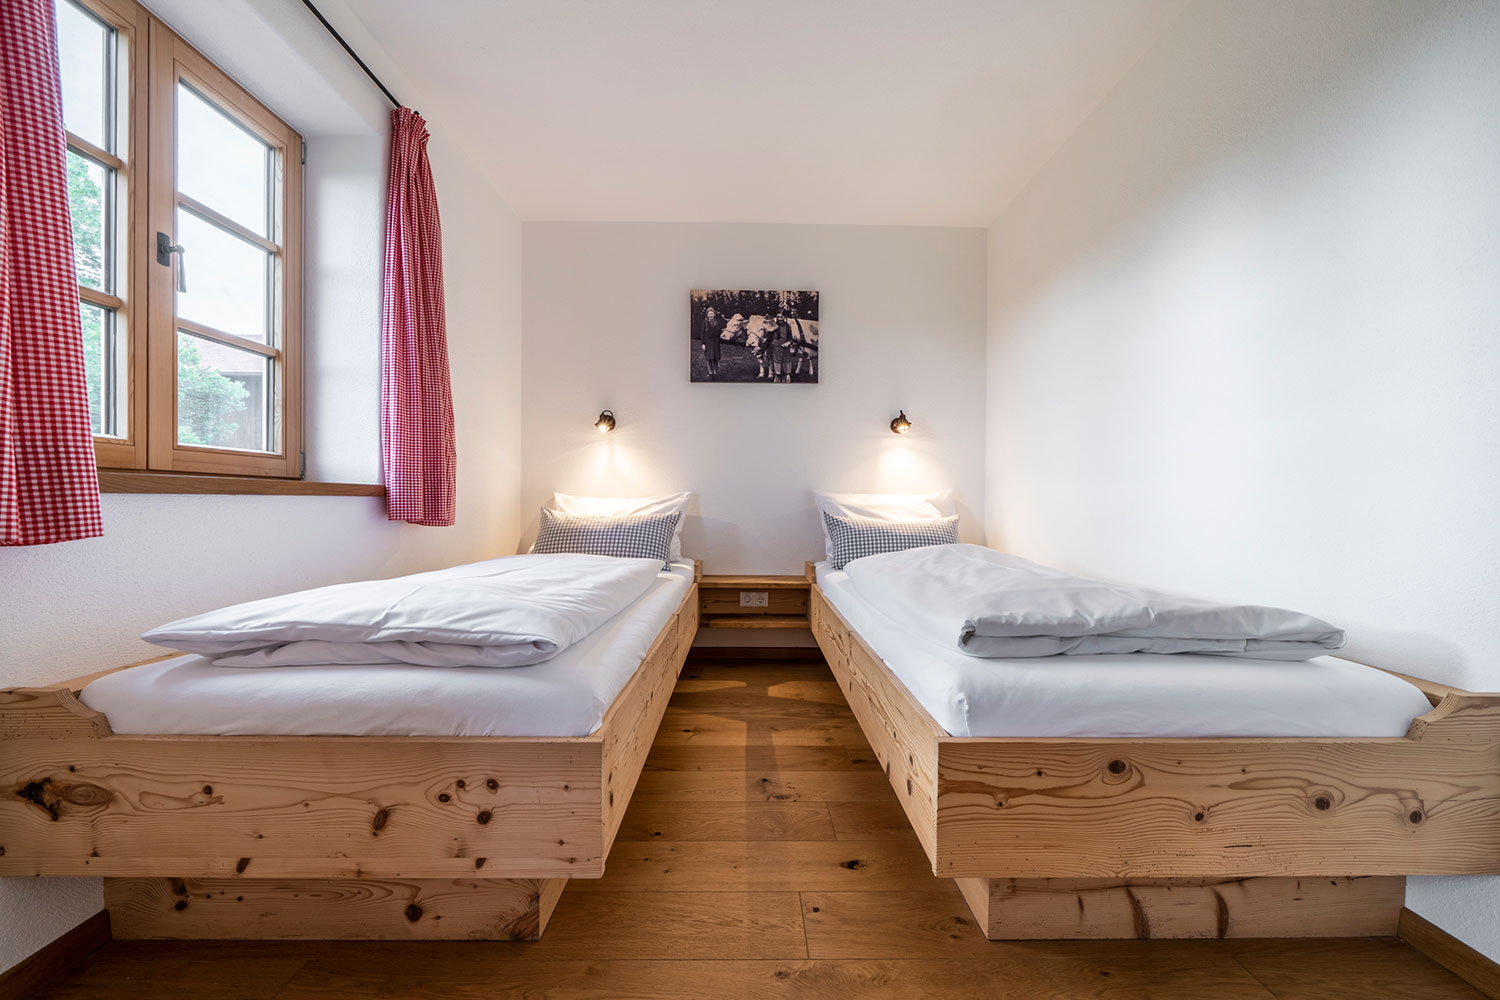 Schlafzimmer mit zwei getrennten Betten aus Holz und Fenster mit roten vorhängen